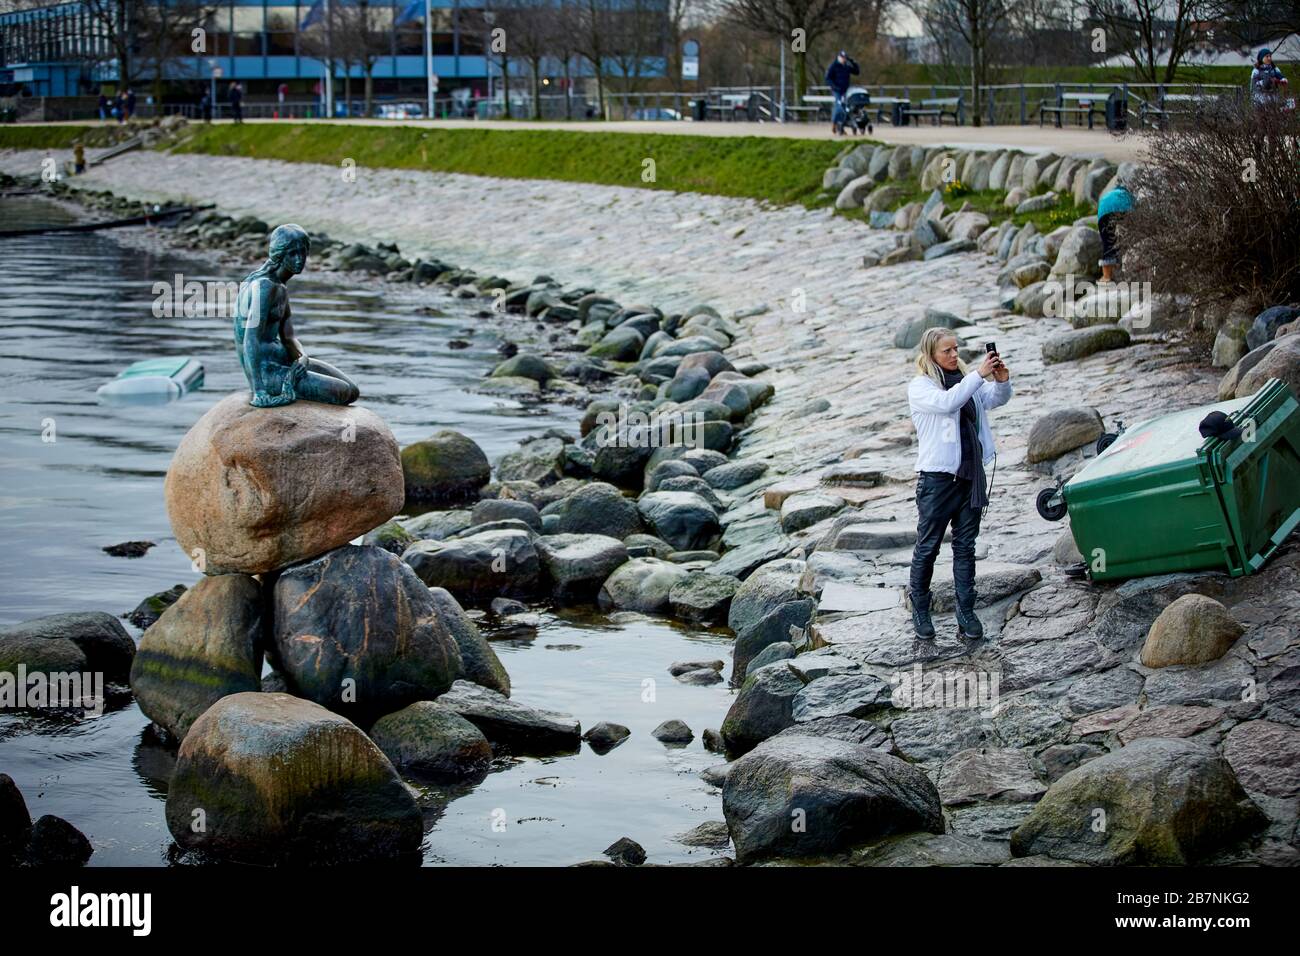 Kopenhagen, Dänemarks Hauptstadt, Bronzestatue der kleinen Meerjungfrau an der Langelini-Promenade von Designer Edvard Eriksen Stockfoto